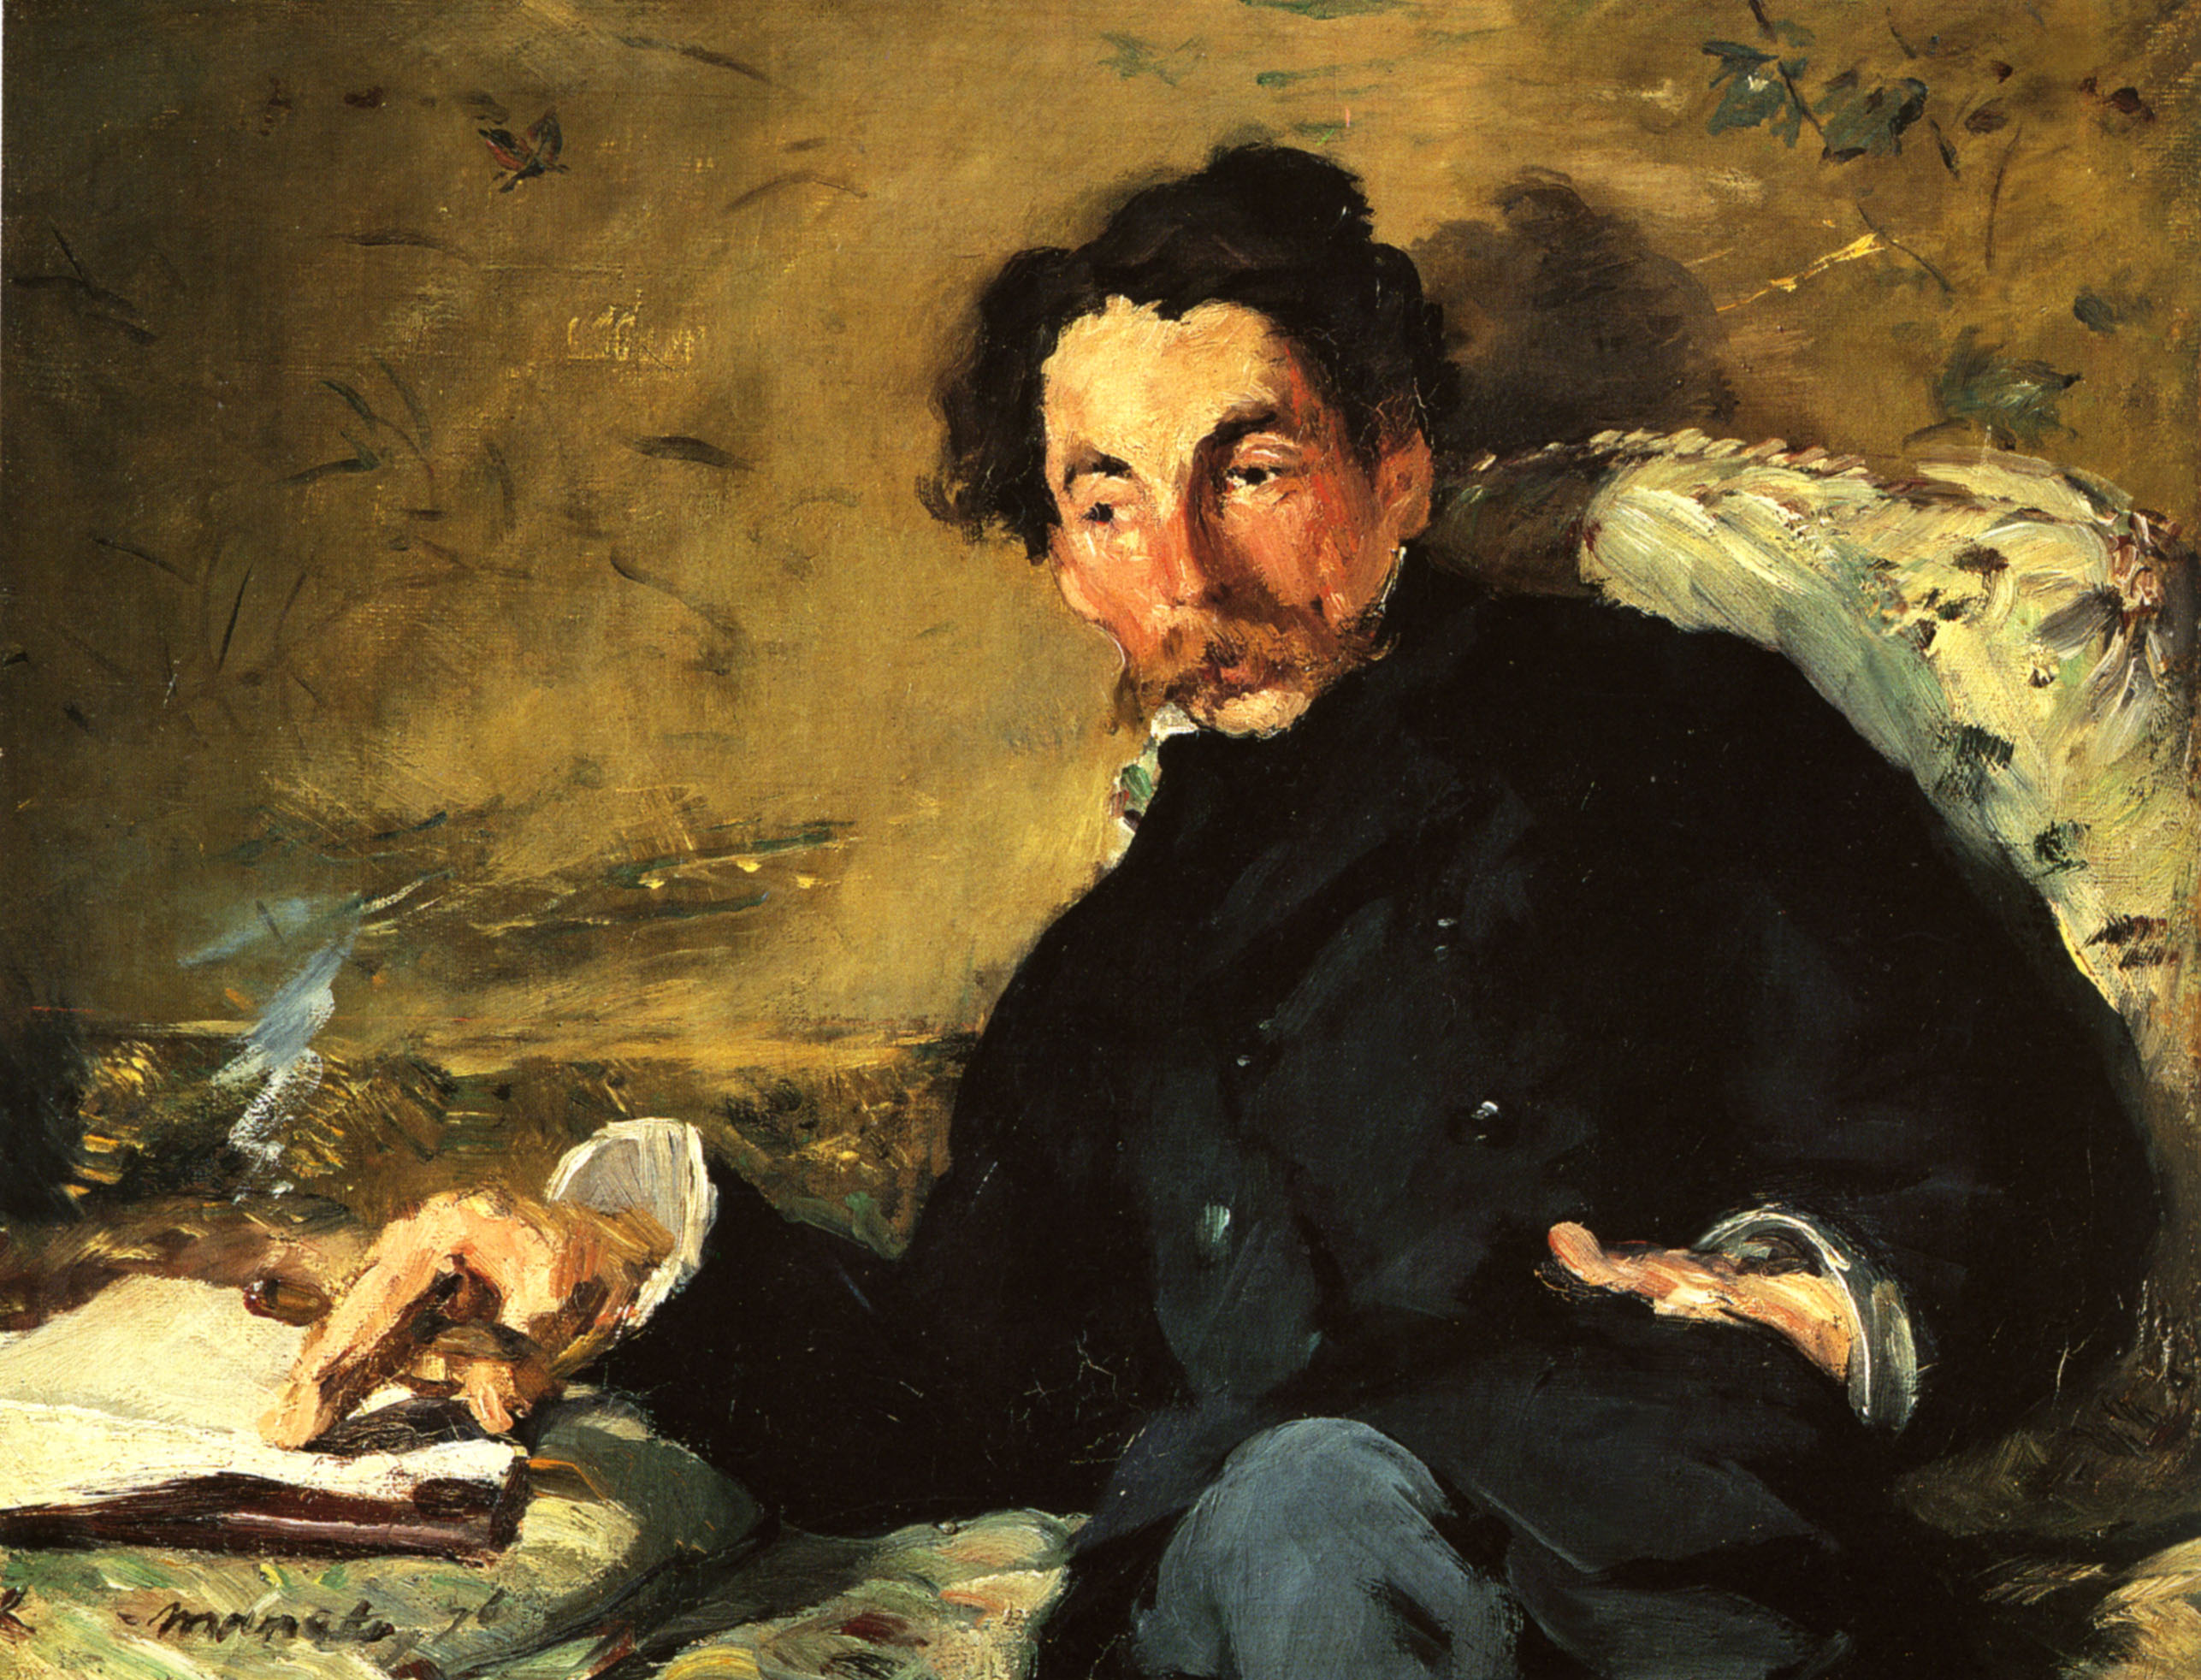 Эдуард Мане. "Портрет Стефана Малларме". 1876.